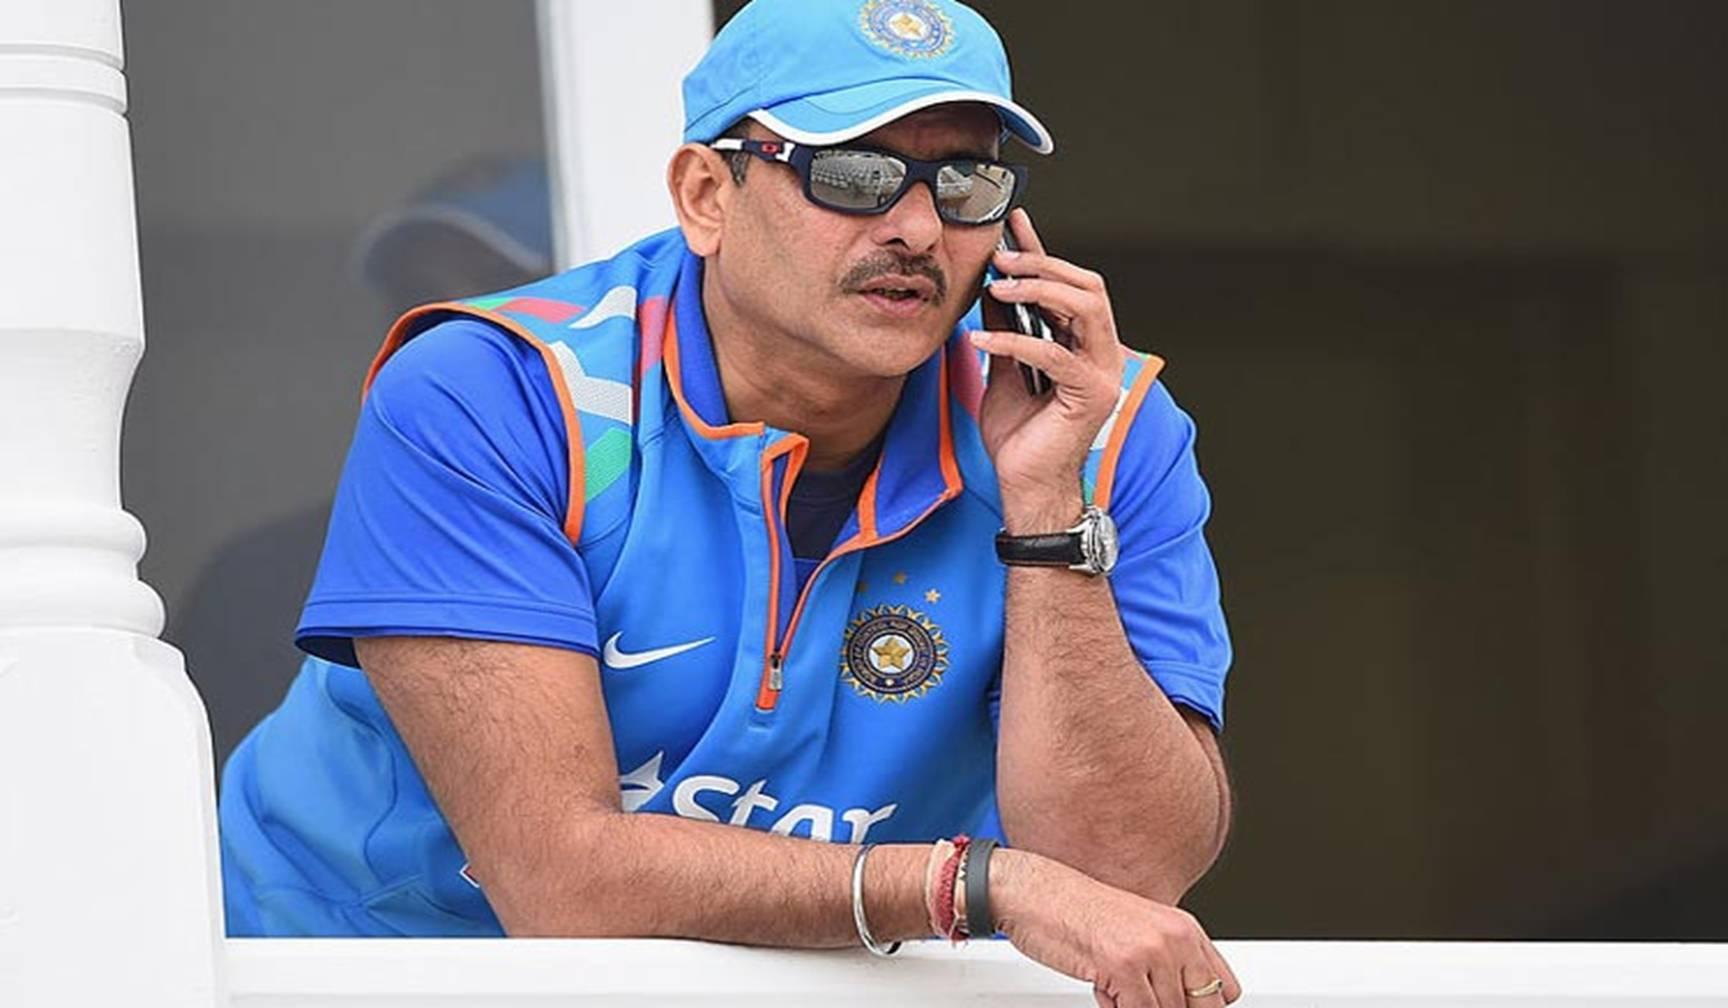 BREAKING:  टीम इंडिया के कोच पद के लिए कई दिग्गज, अब रवि शास्त्री भी करेंगे आवेदन